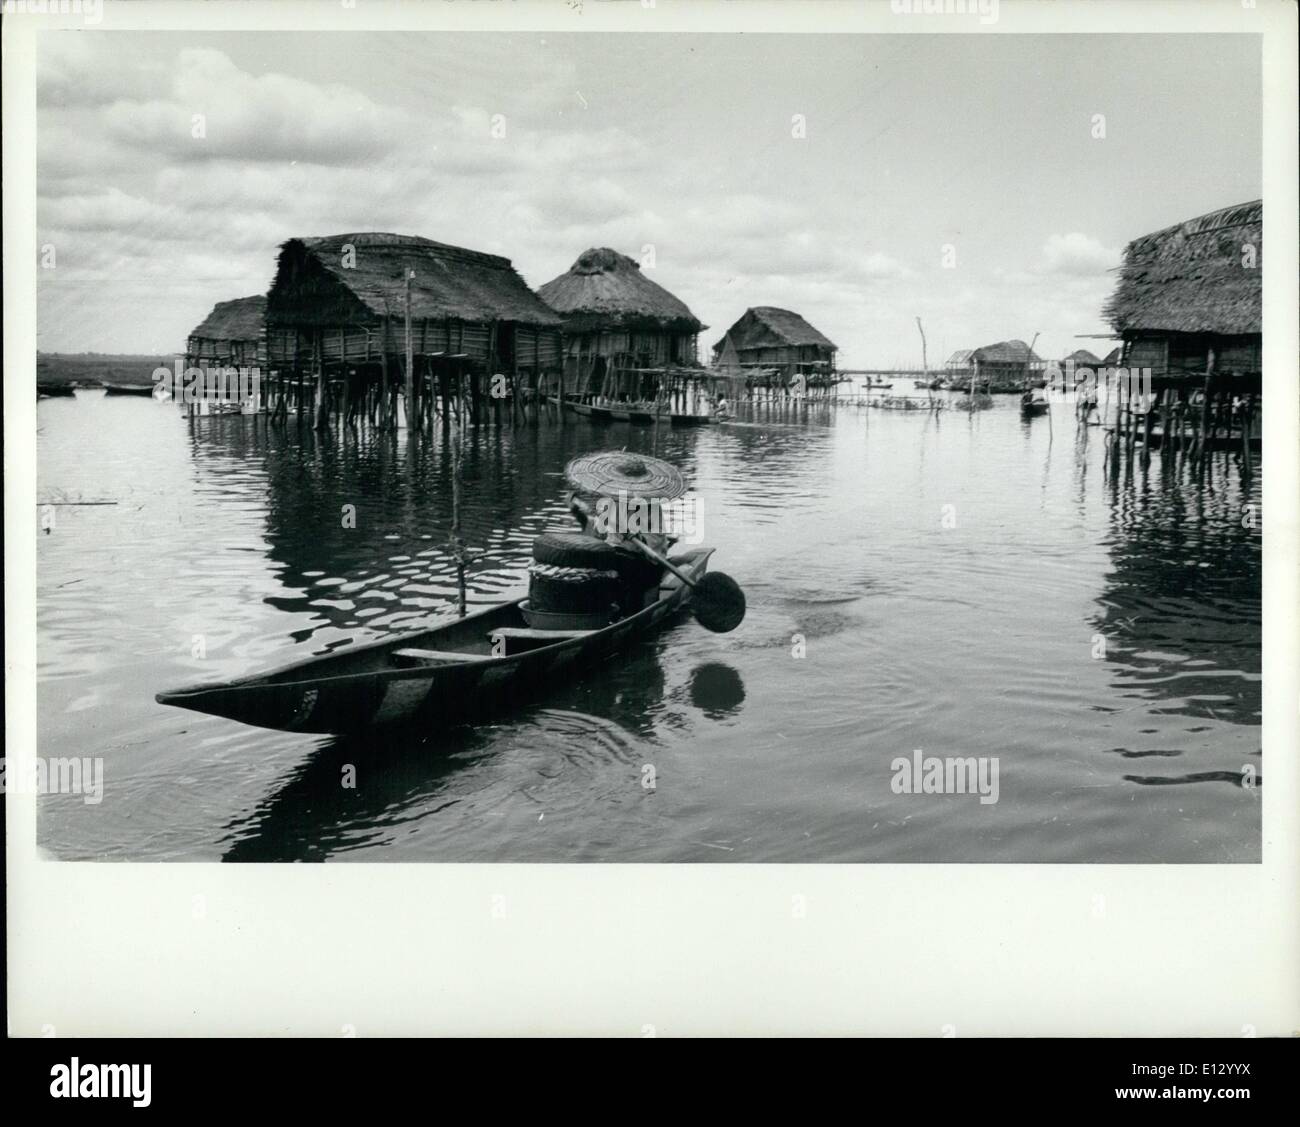 Febbraio 25, 2012 - Dahomey, 1962 Il lago sfida del villaggio di pescatori di Ganvie venditori ambulanti viaggiare di casa in casa in corso, la vendita di sigarette e di spezie, riso e altri prodotti. Foto Stock